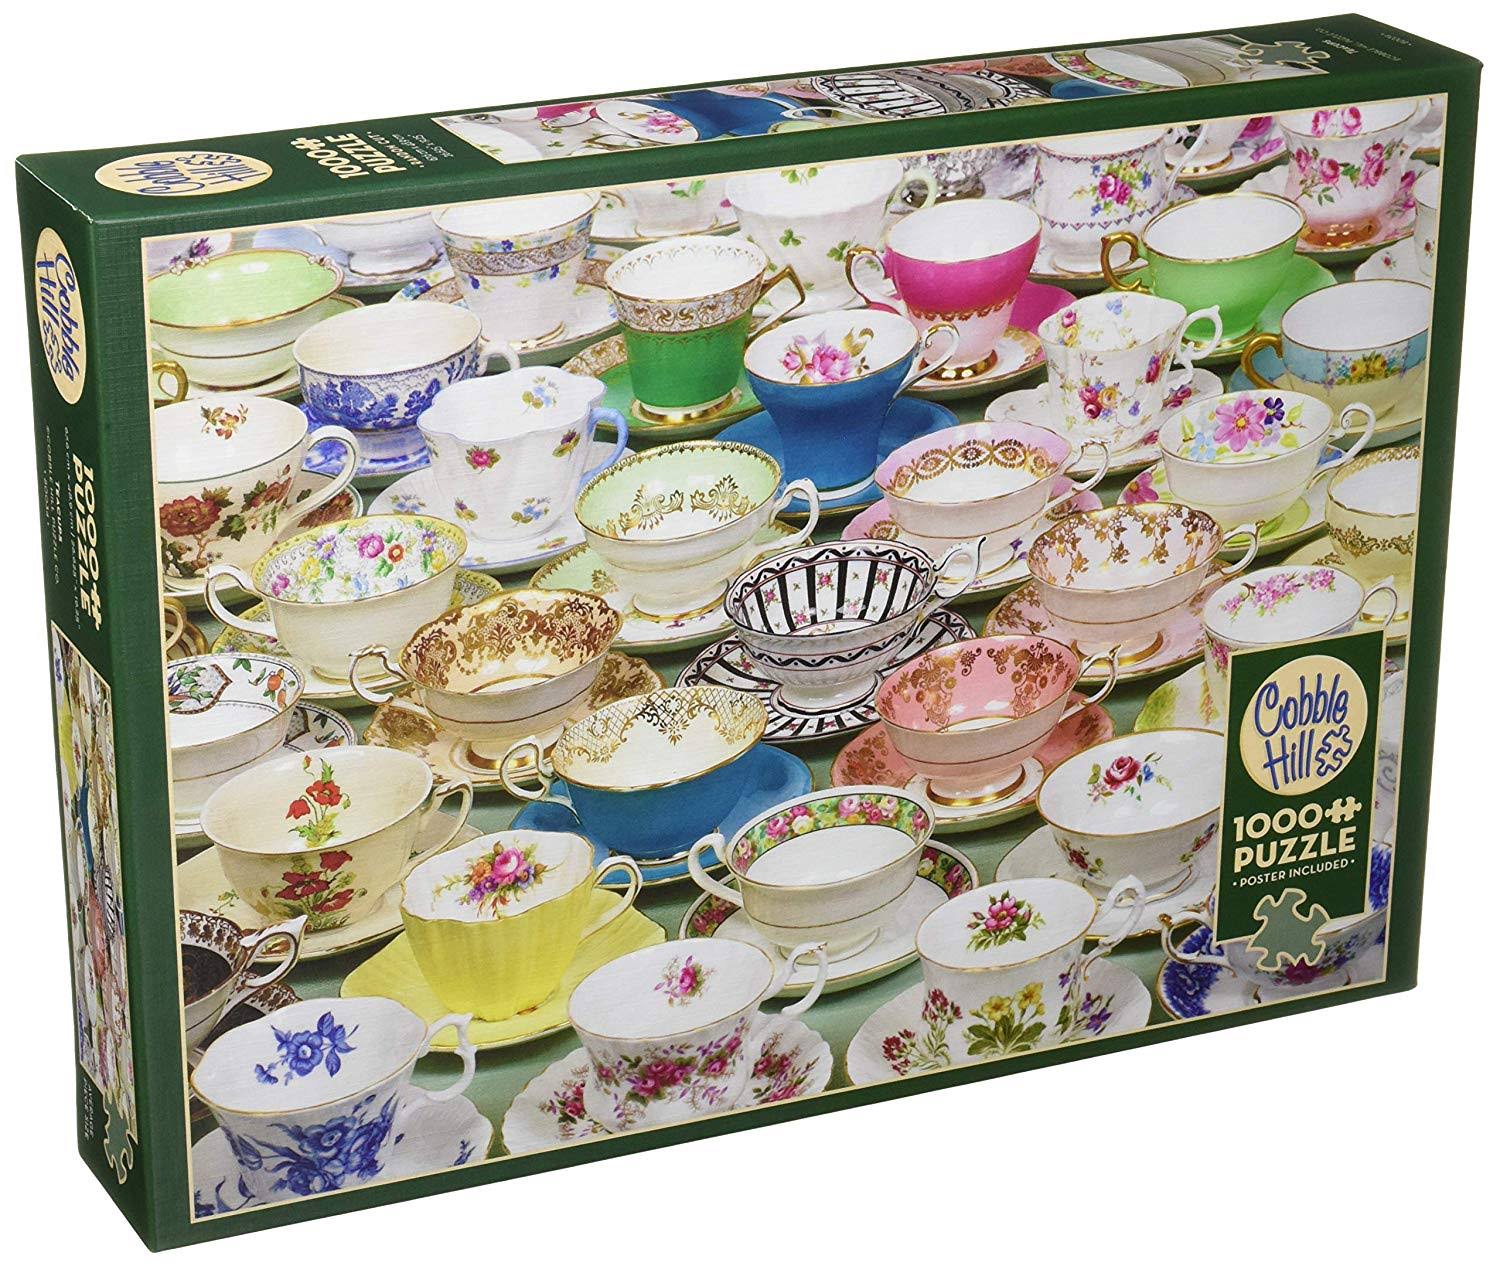 Cobble Hill Tea Cups Jigsaw Puzzle - 1000pcs